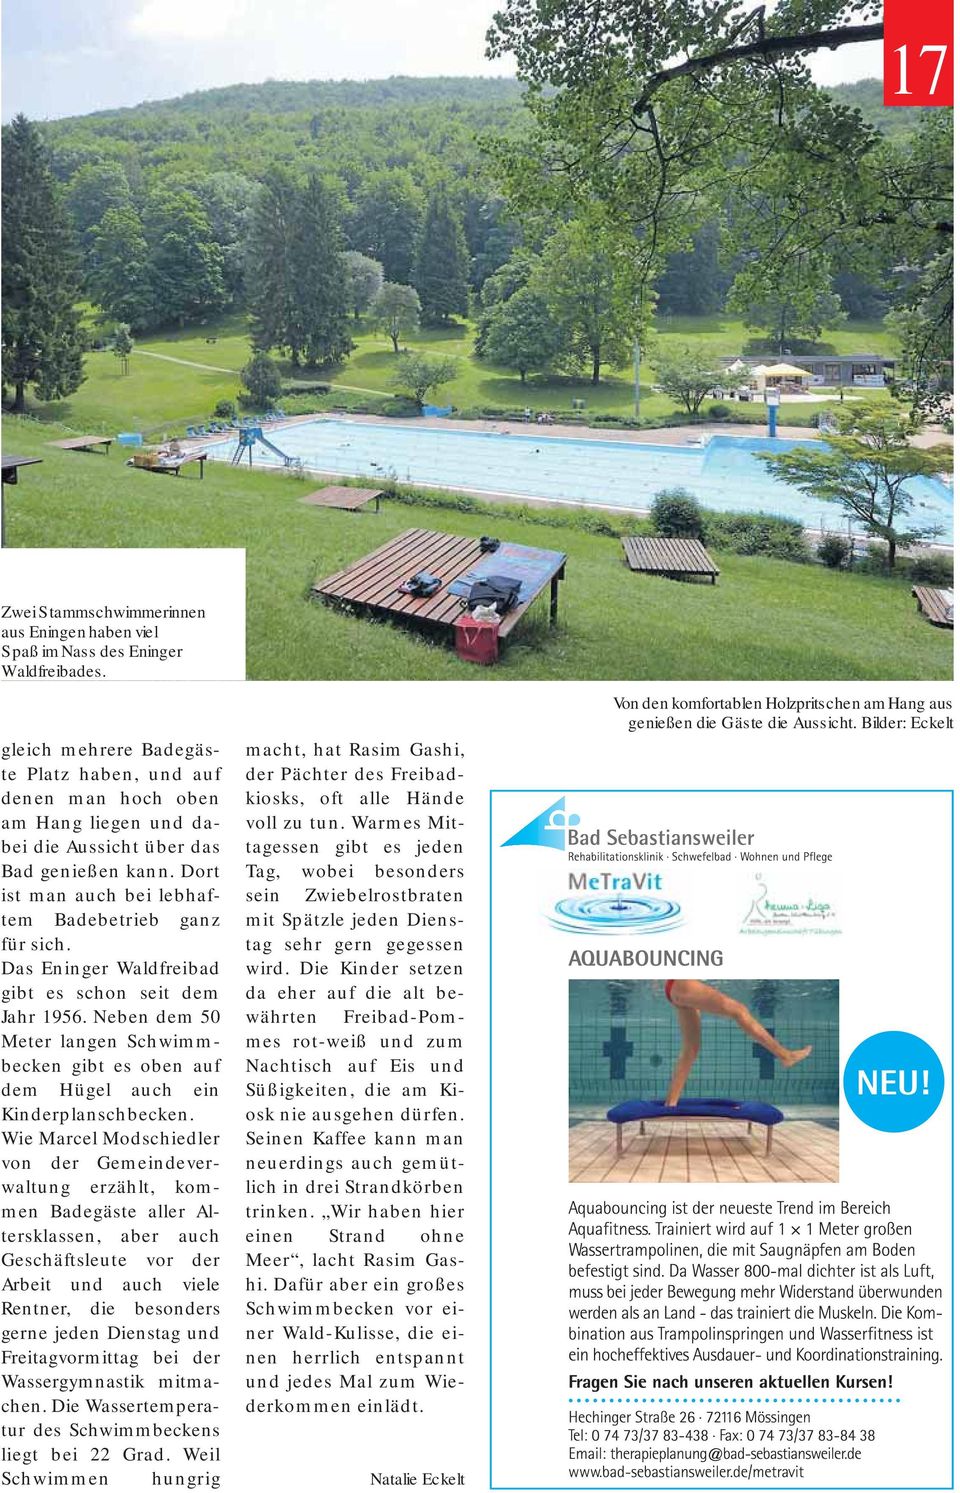 Das Eninger Waldfreibad gibt es schon seit dem Jahr 1956. Neben dem 50 Meter langen Schwimmbecken gibt es oben auf dem Hügel auch ein Kinderplanschbecken.